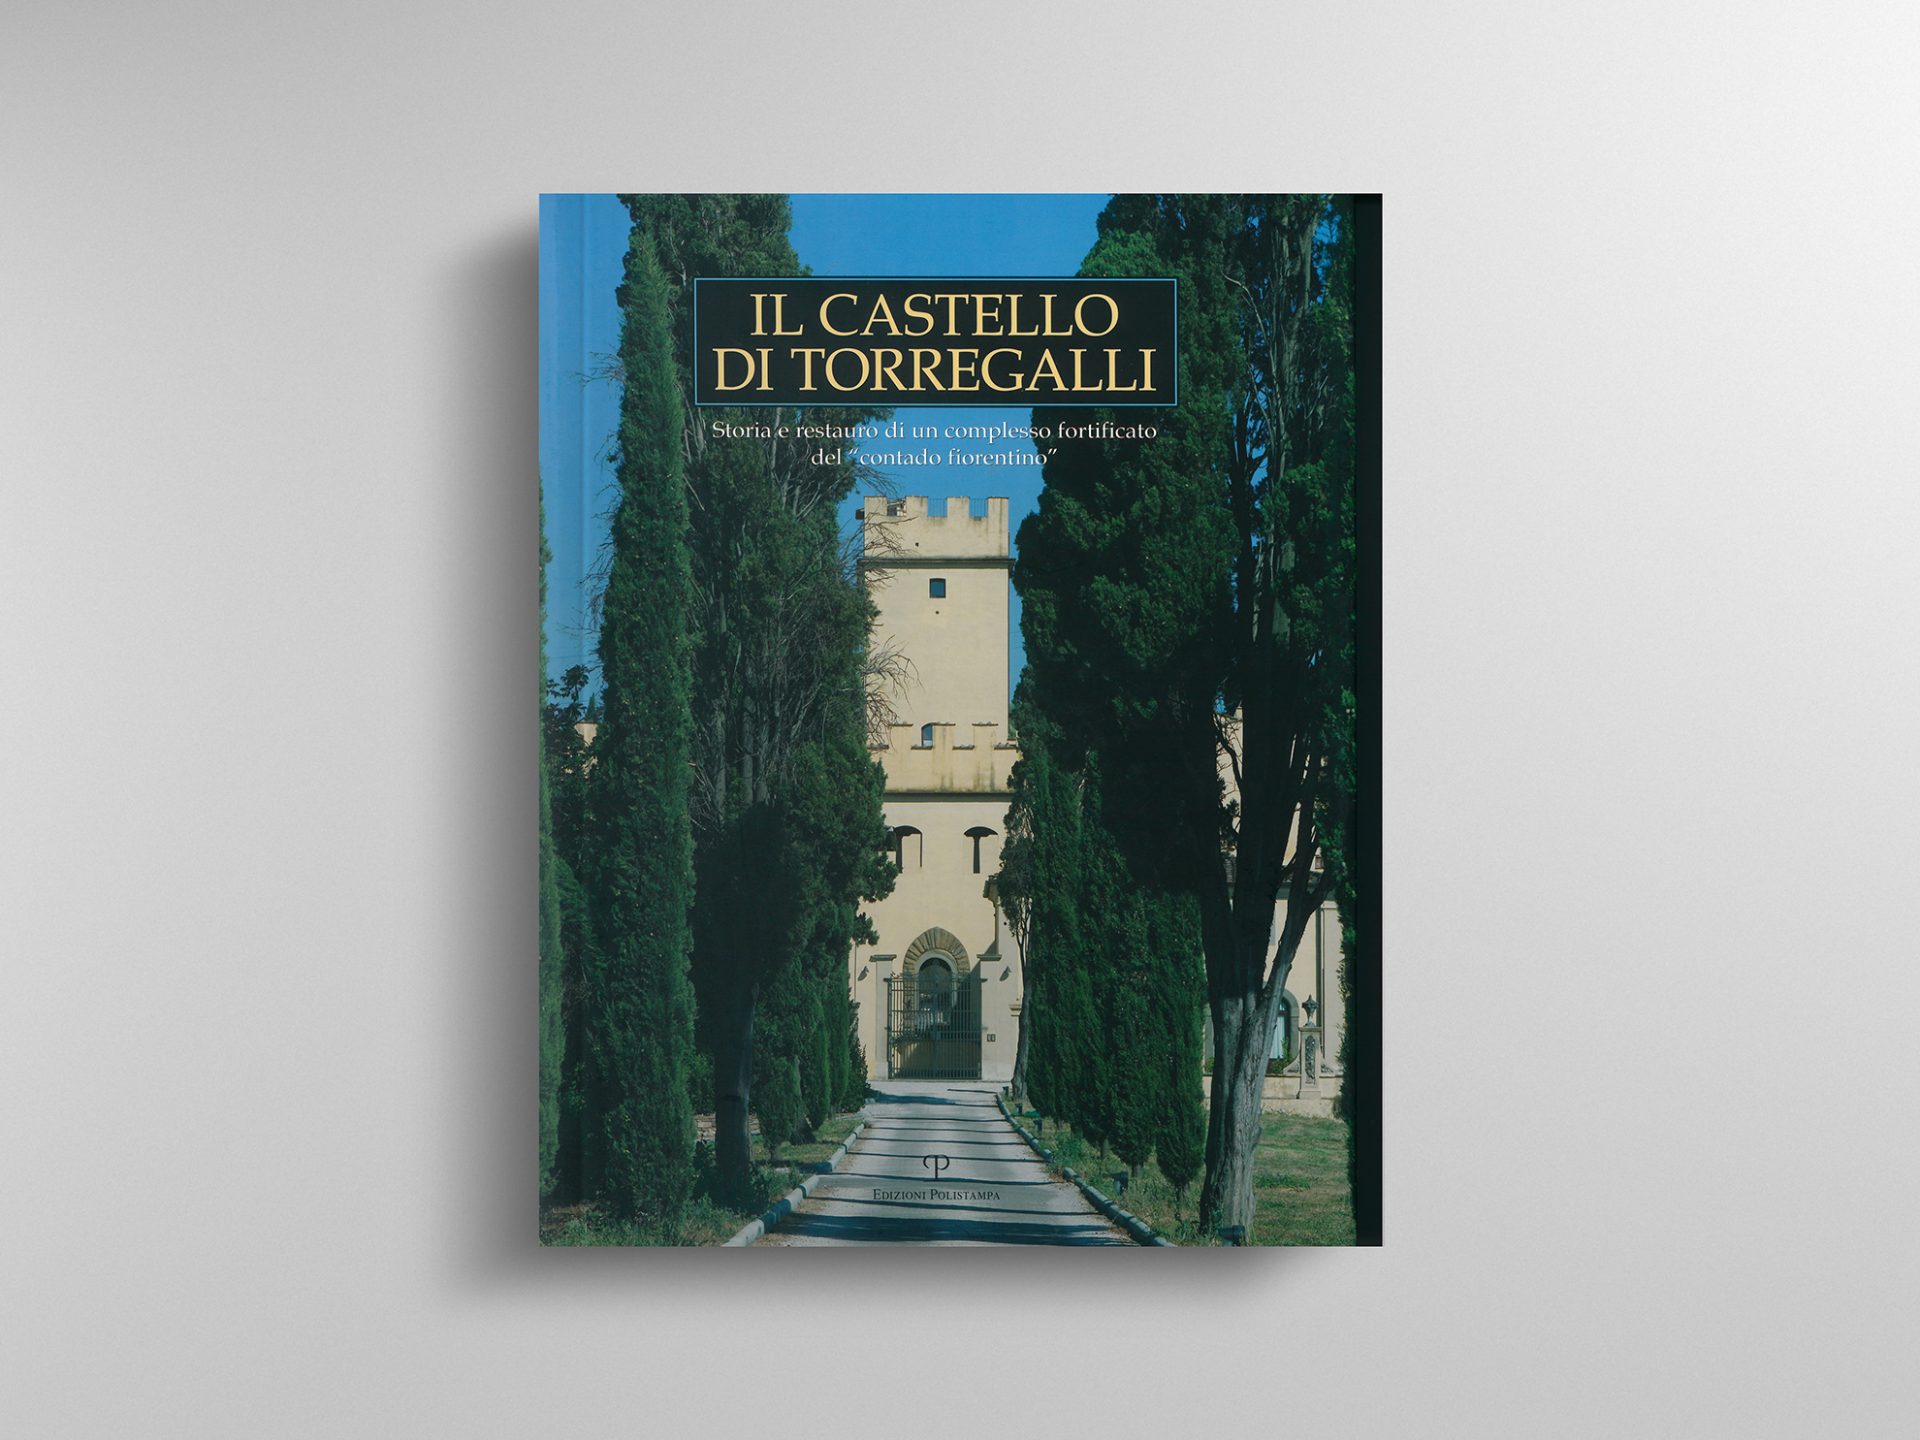 Il Castello di Torregalli - Storia e restauro di un complesso fortificato del "contado fiorentino"